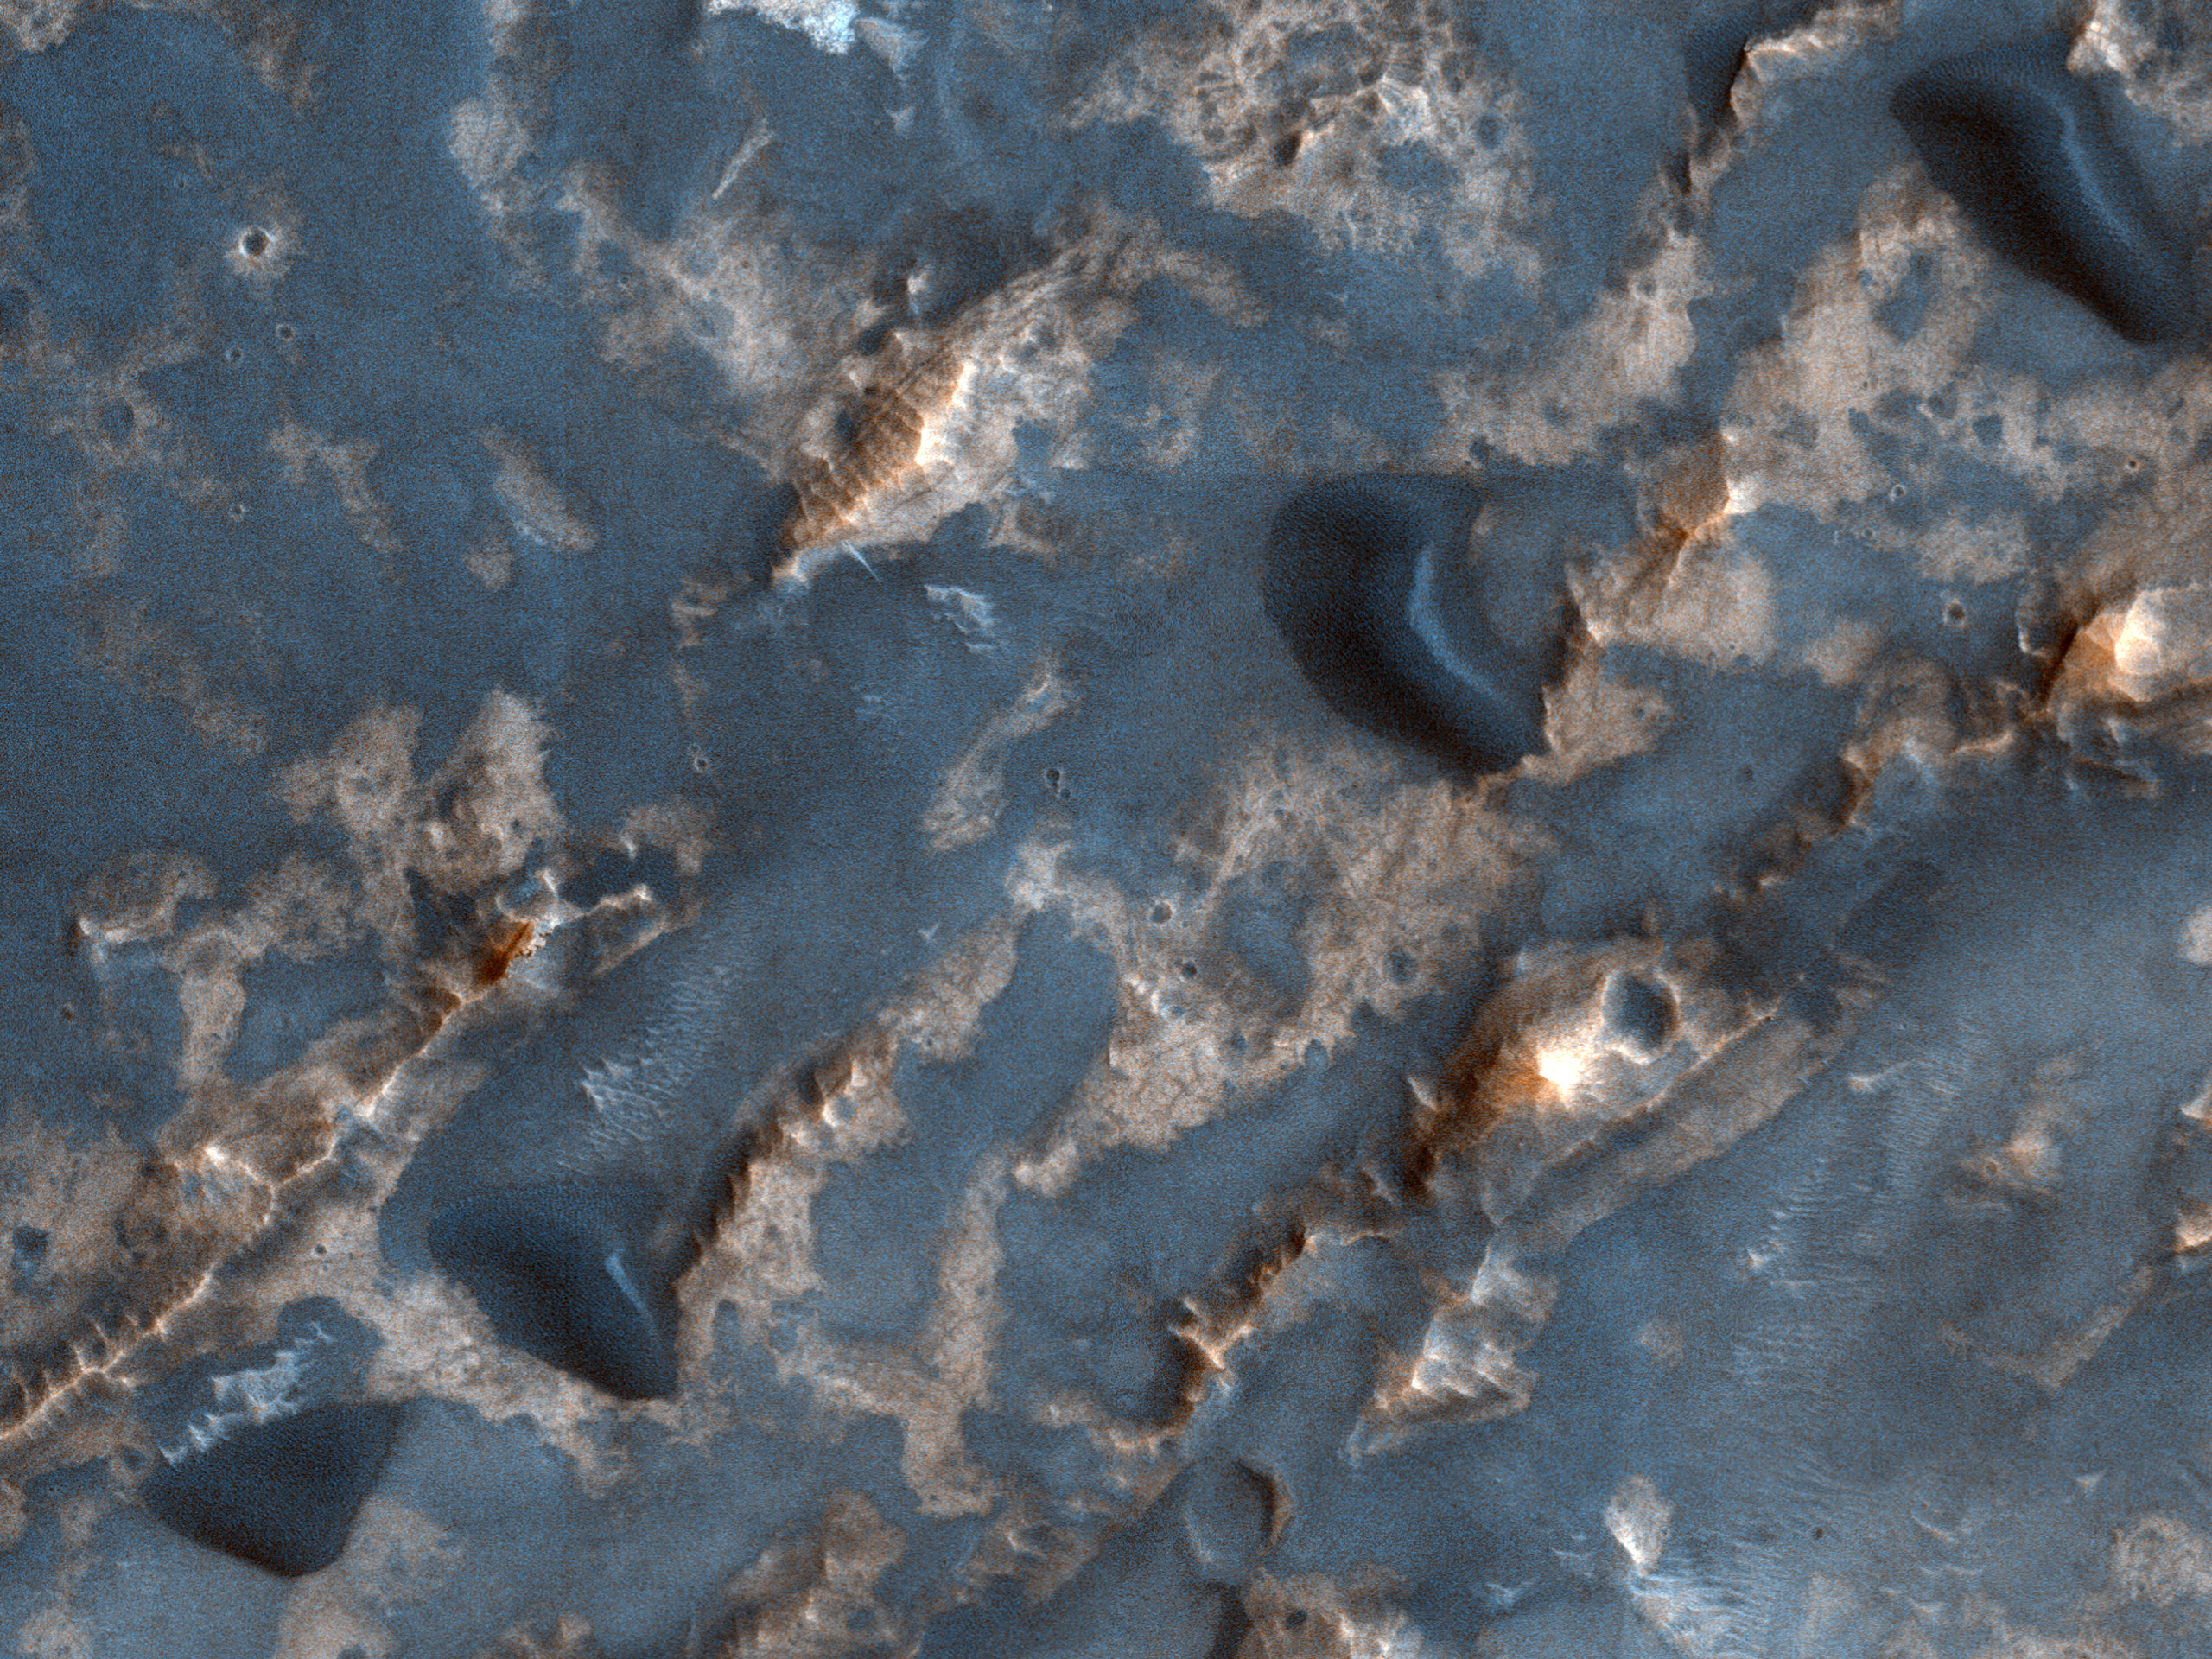 Dunes and Bedrock in Crater in Arabia Terra